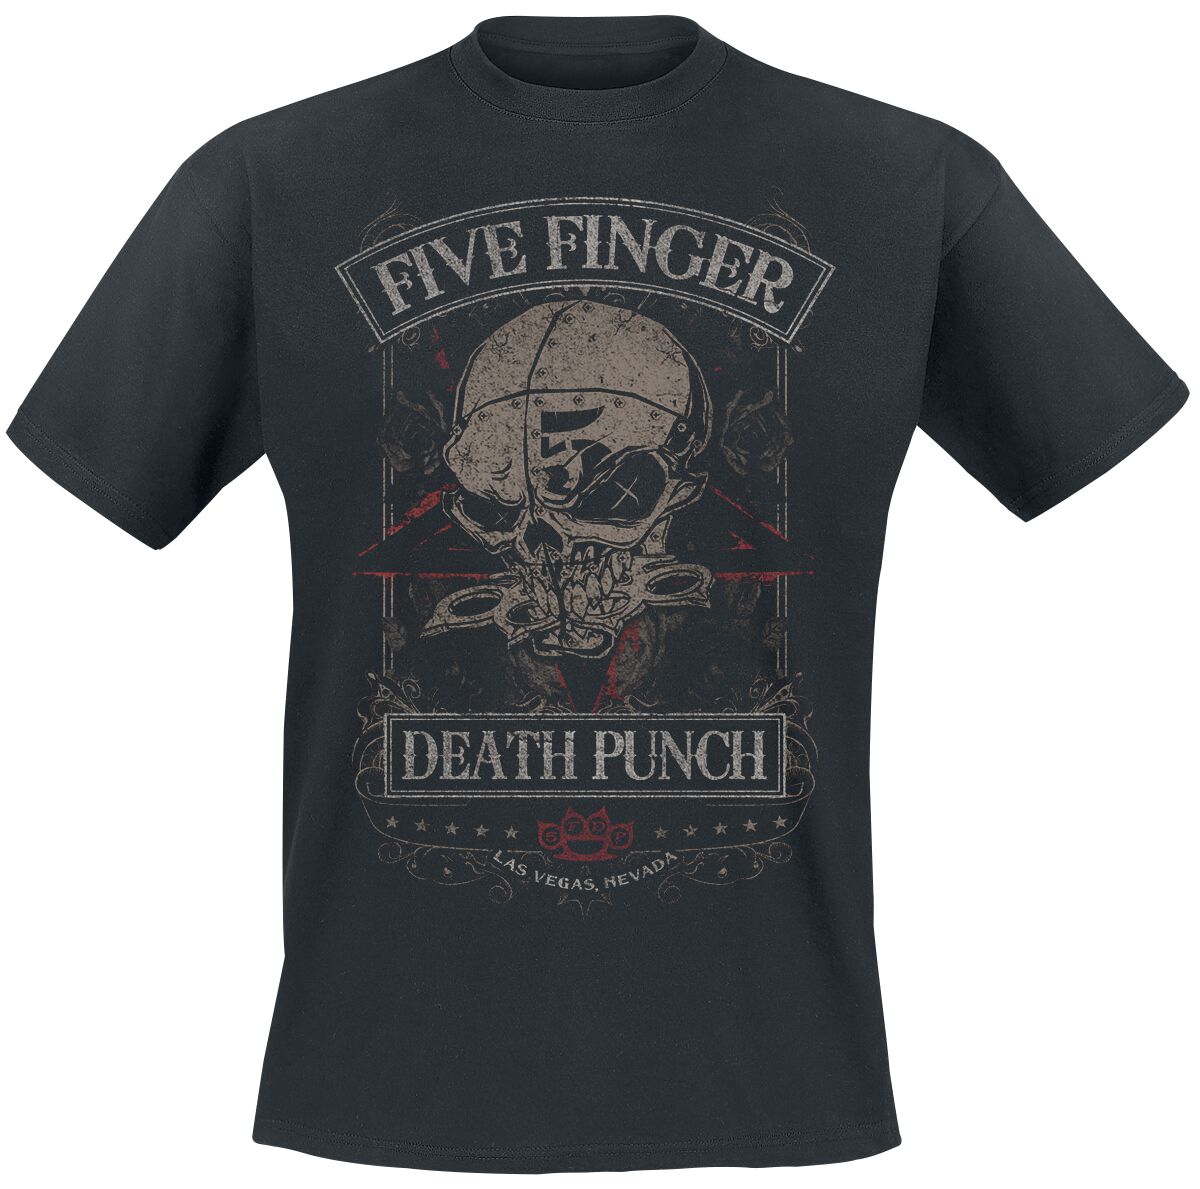 Five Finger Death Punch T-Shirt - Wicked - S bis M - für Männer - Größe M - schwarz  - Lizenziertes Merchandise!